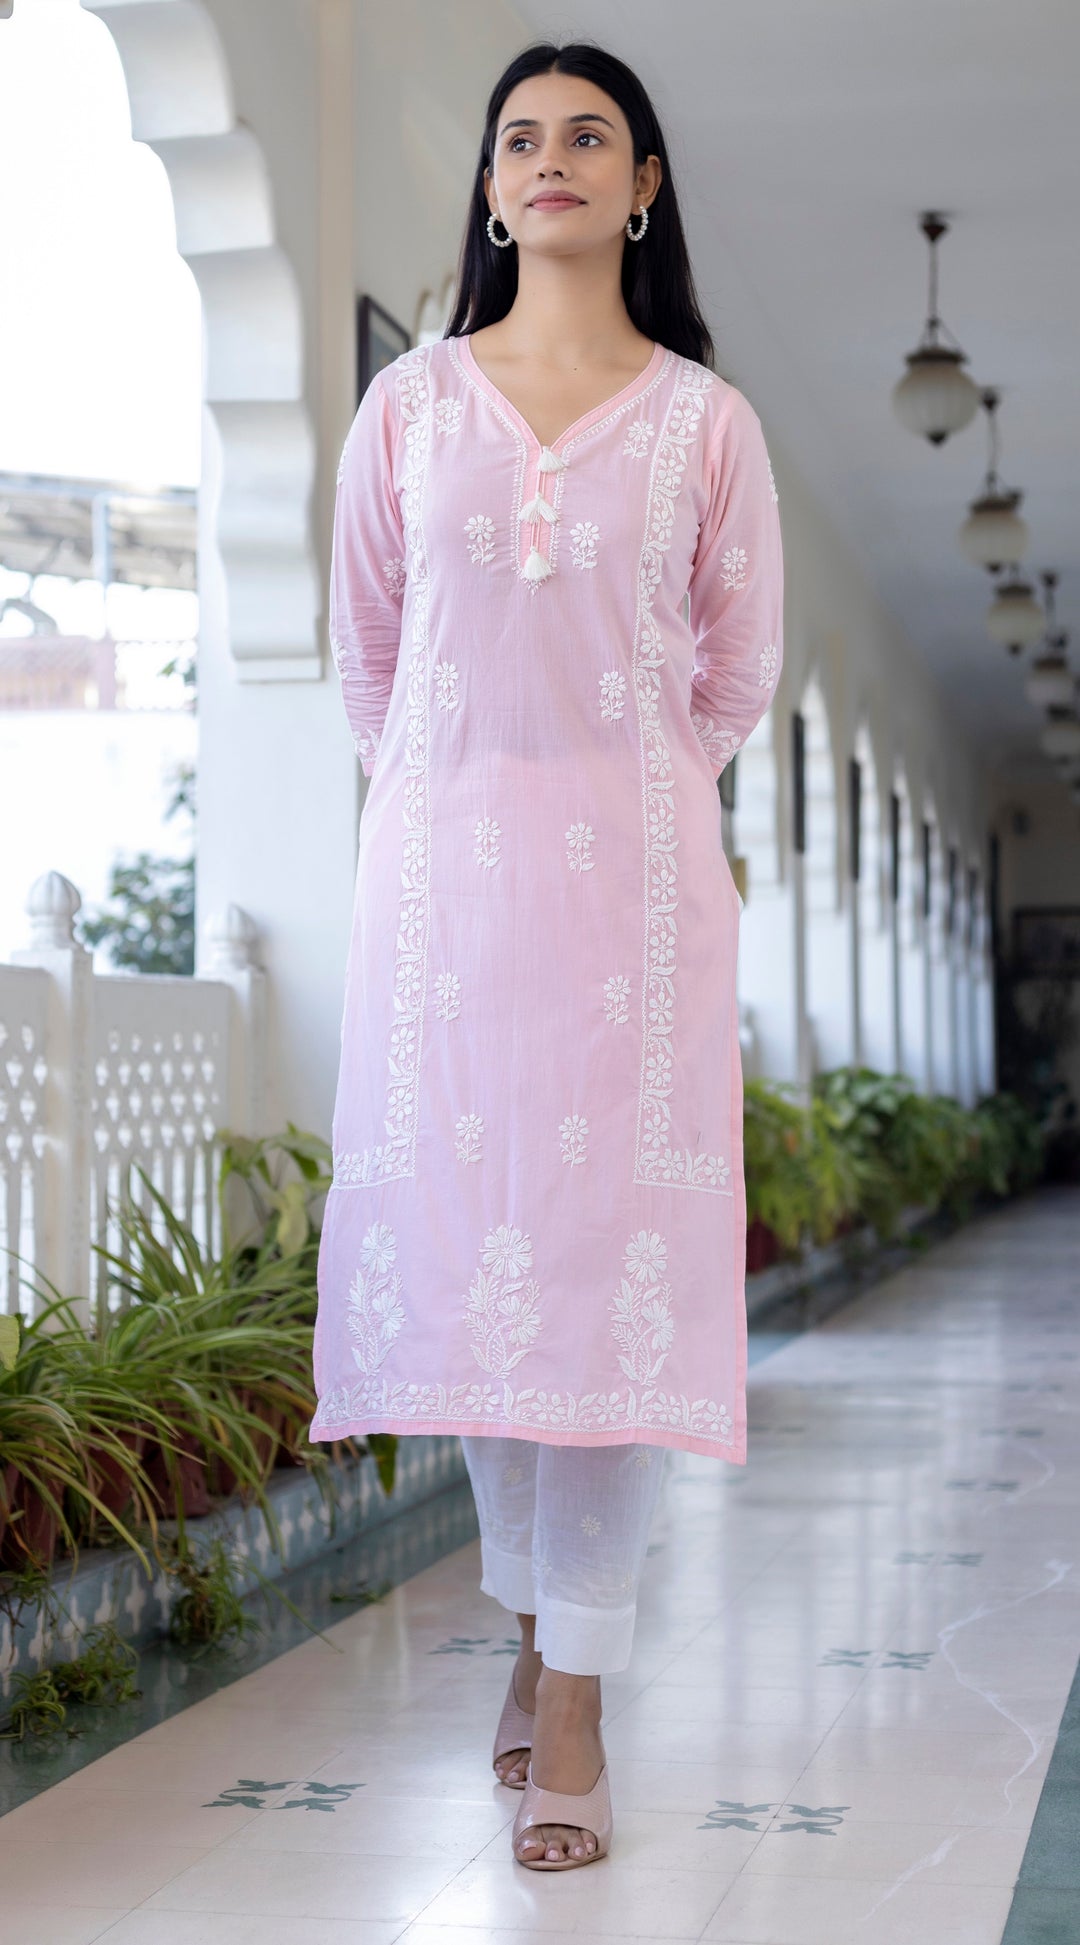 Buy Pink Cotton Chikankari Suit Set Online 